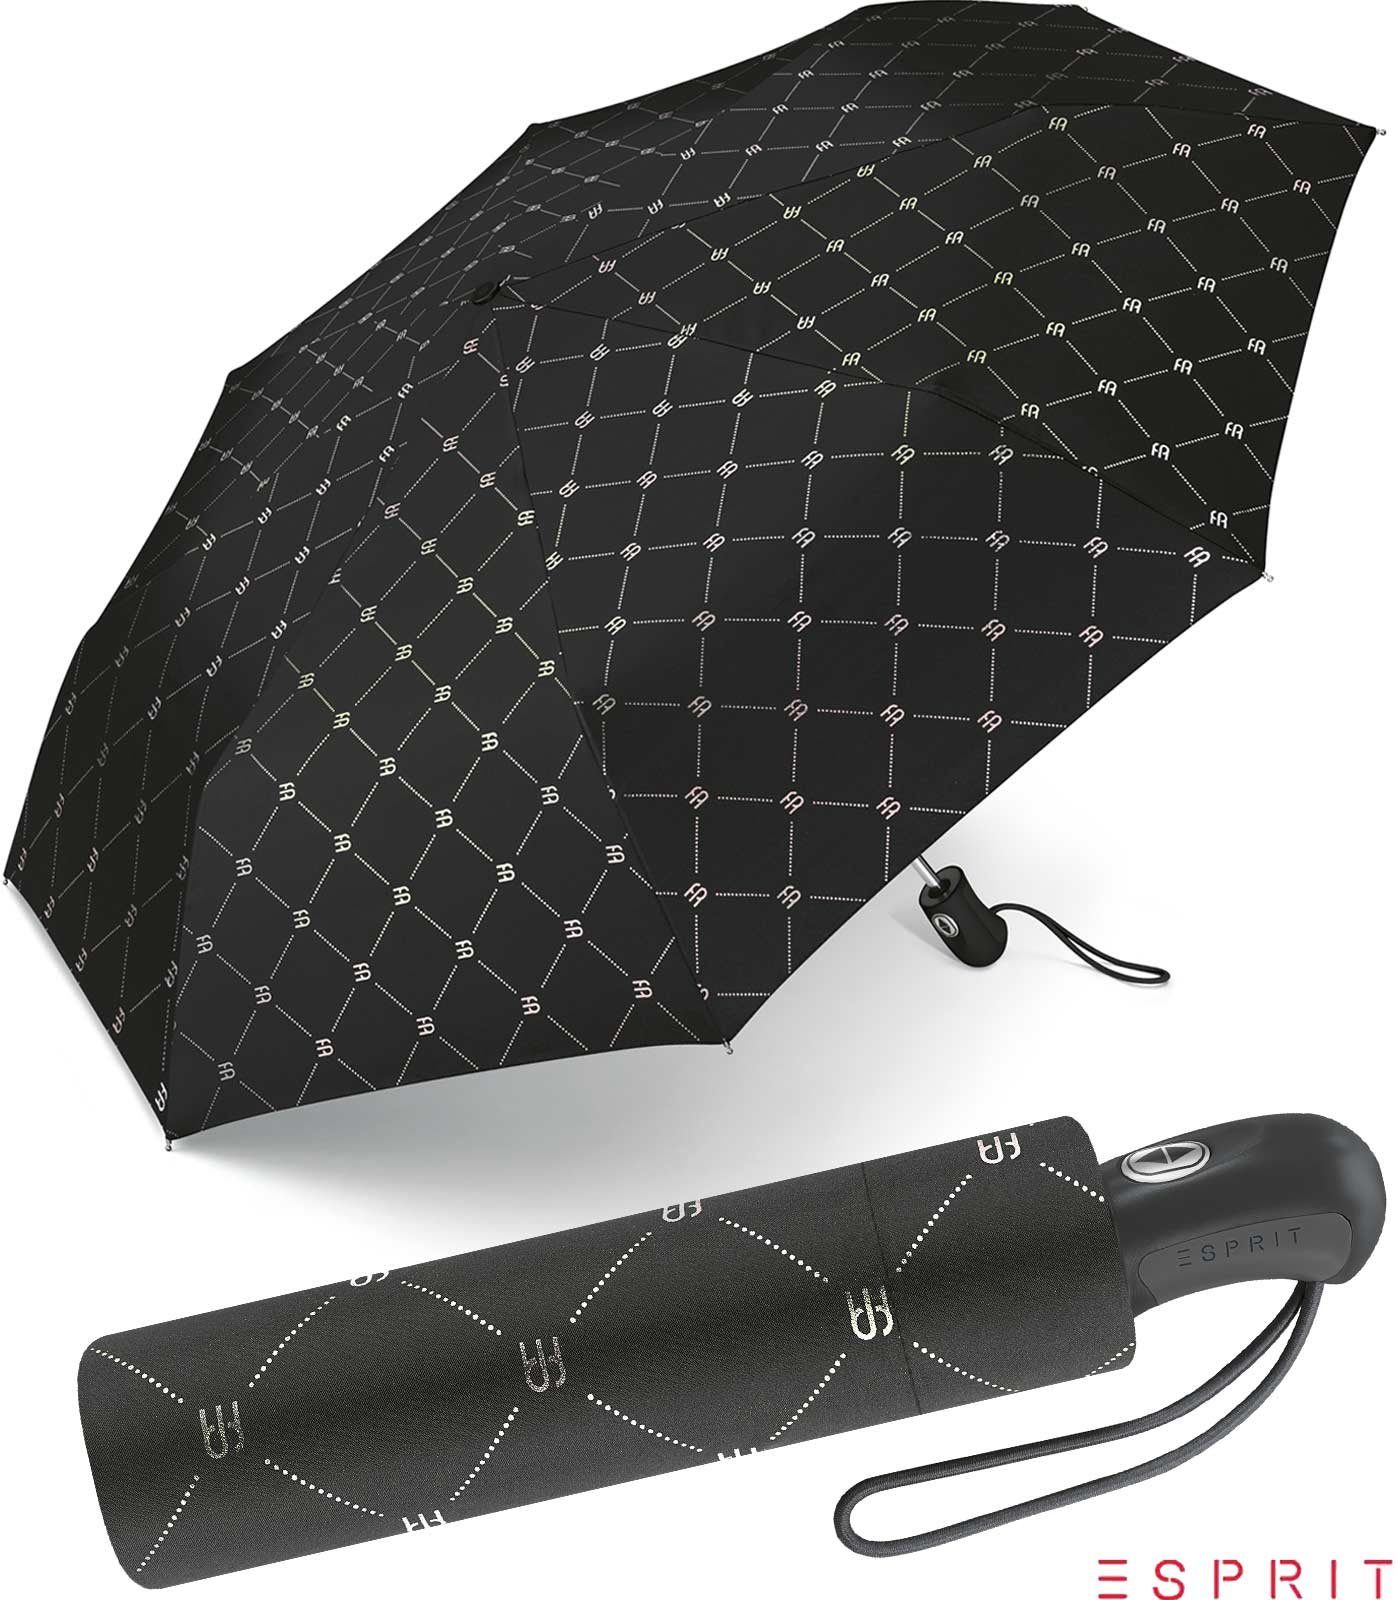 Damen in Design mit klassisches Design für Esprit Schirm Automatik, Langregenschirm modischem Auf-Zu schöner